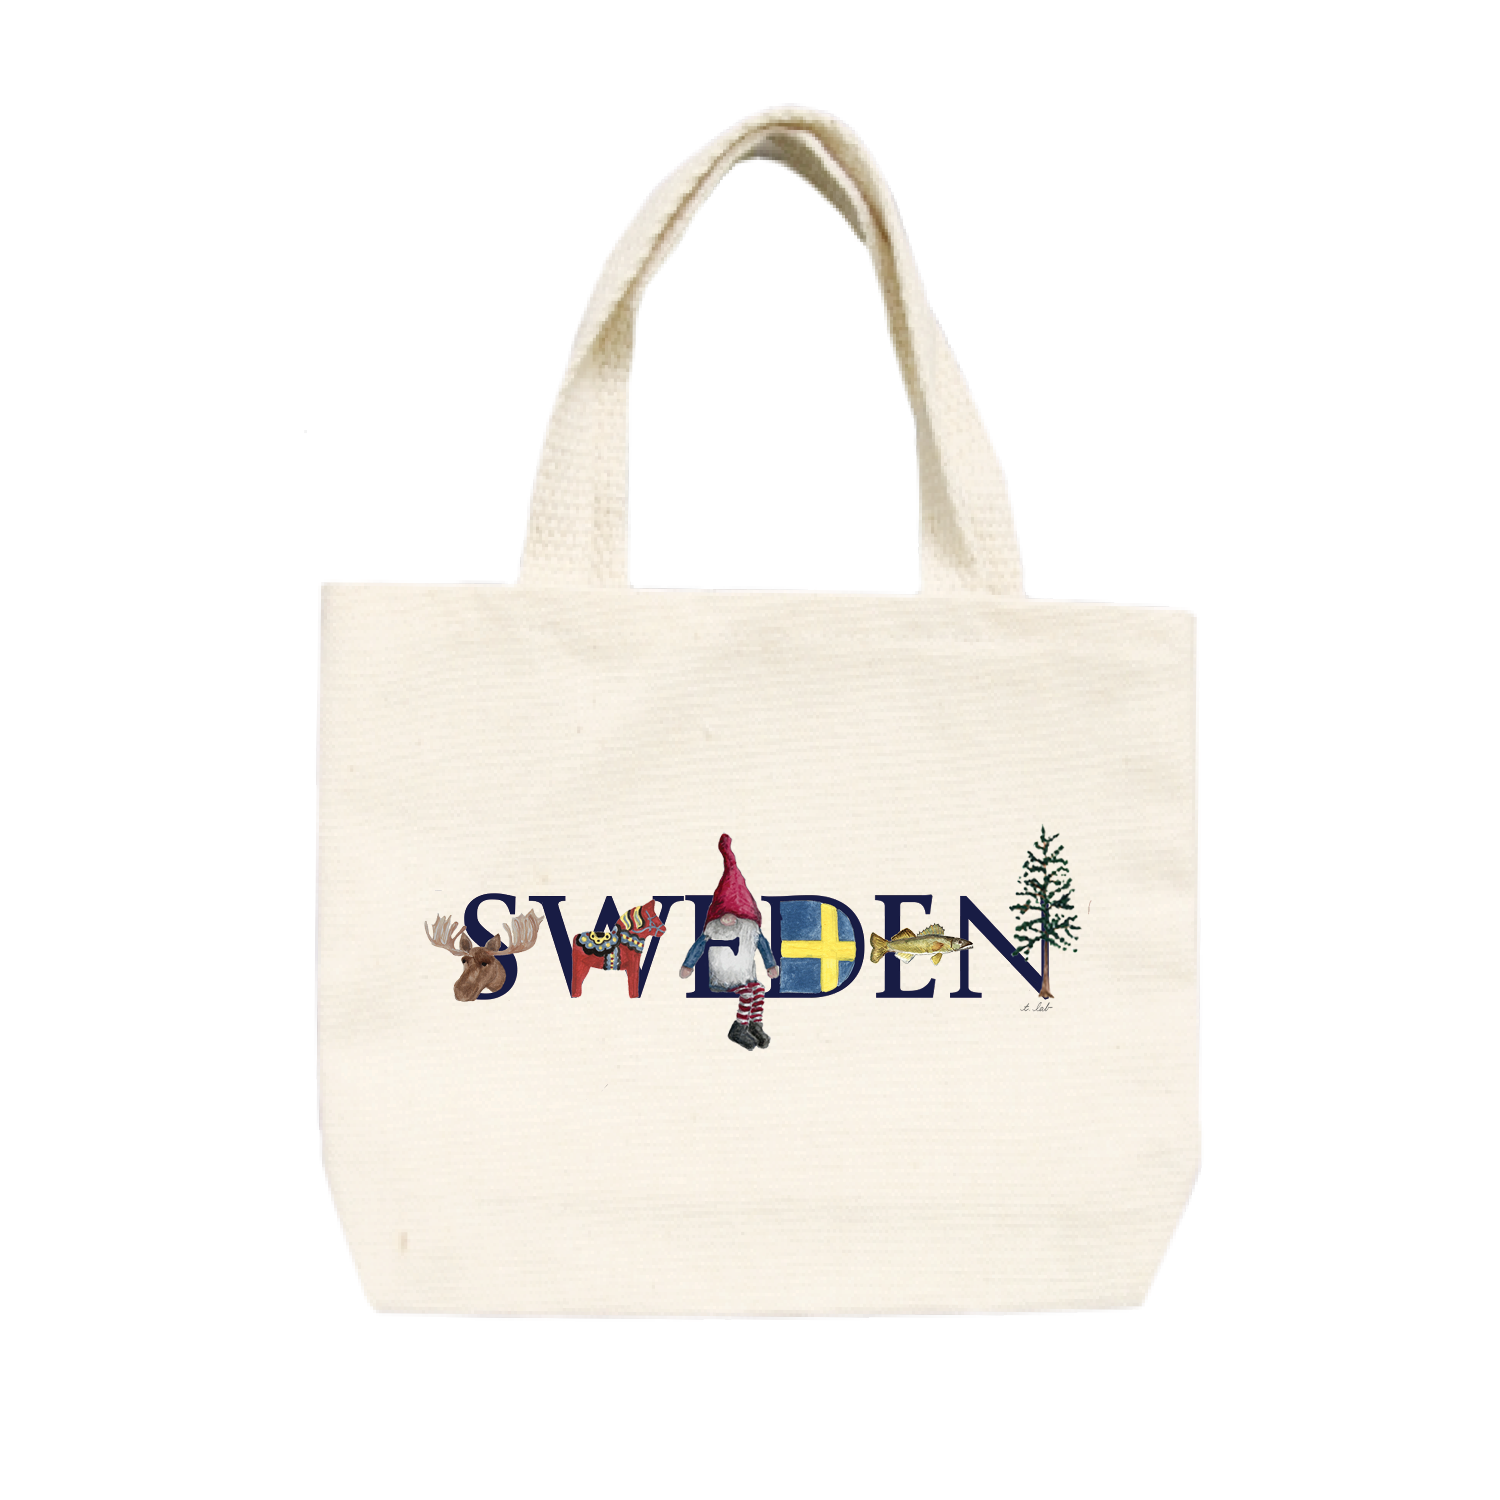 sweden small tote